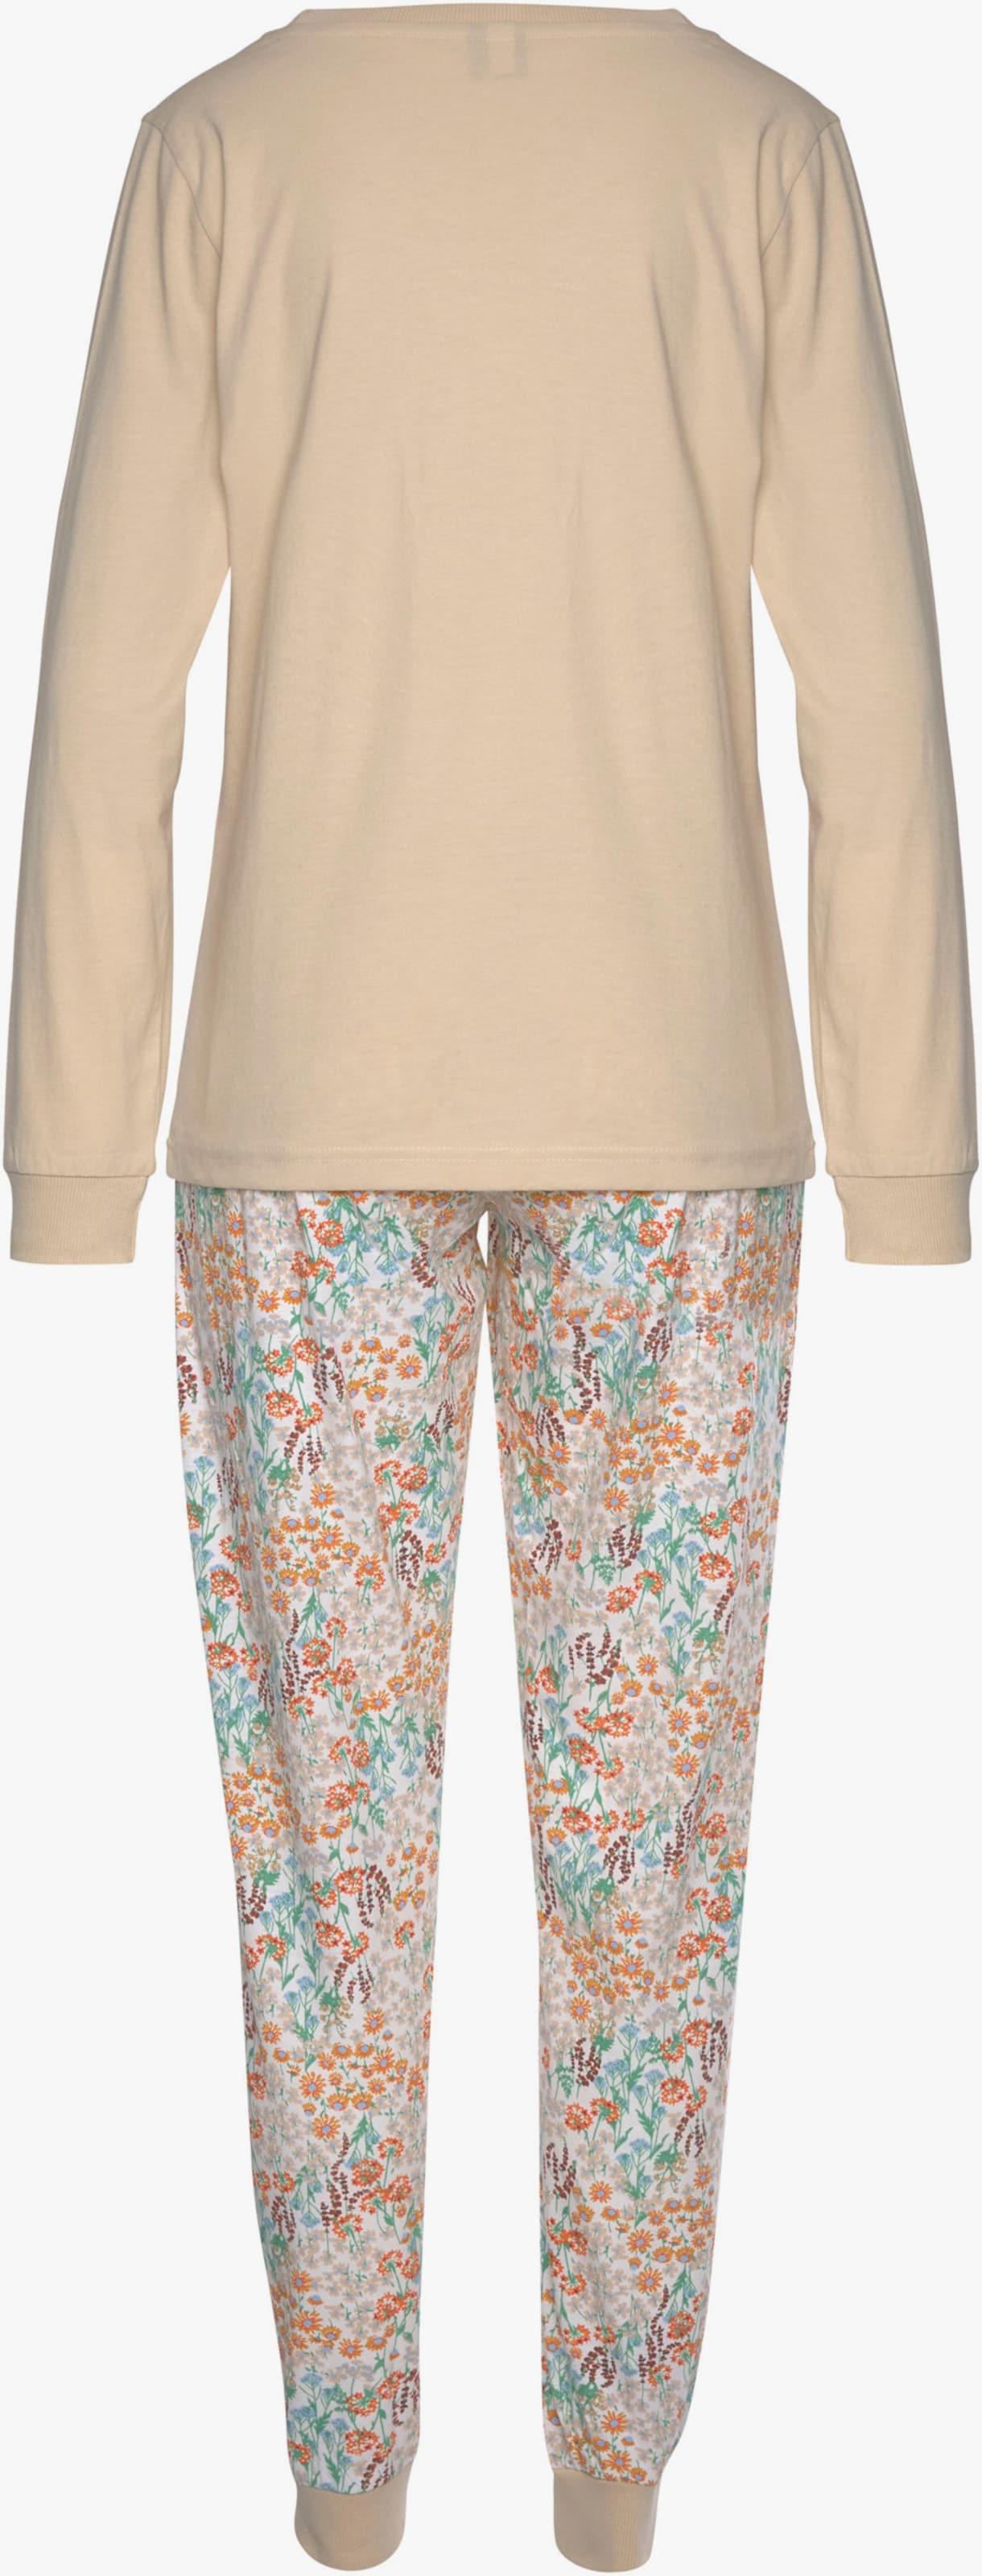 Vivance Dreams Pyjama - sable floral, gris foncé floral